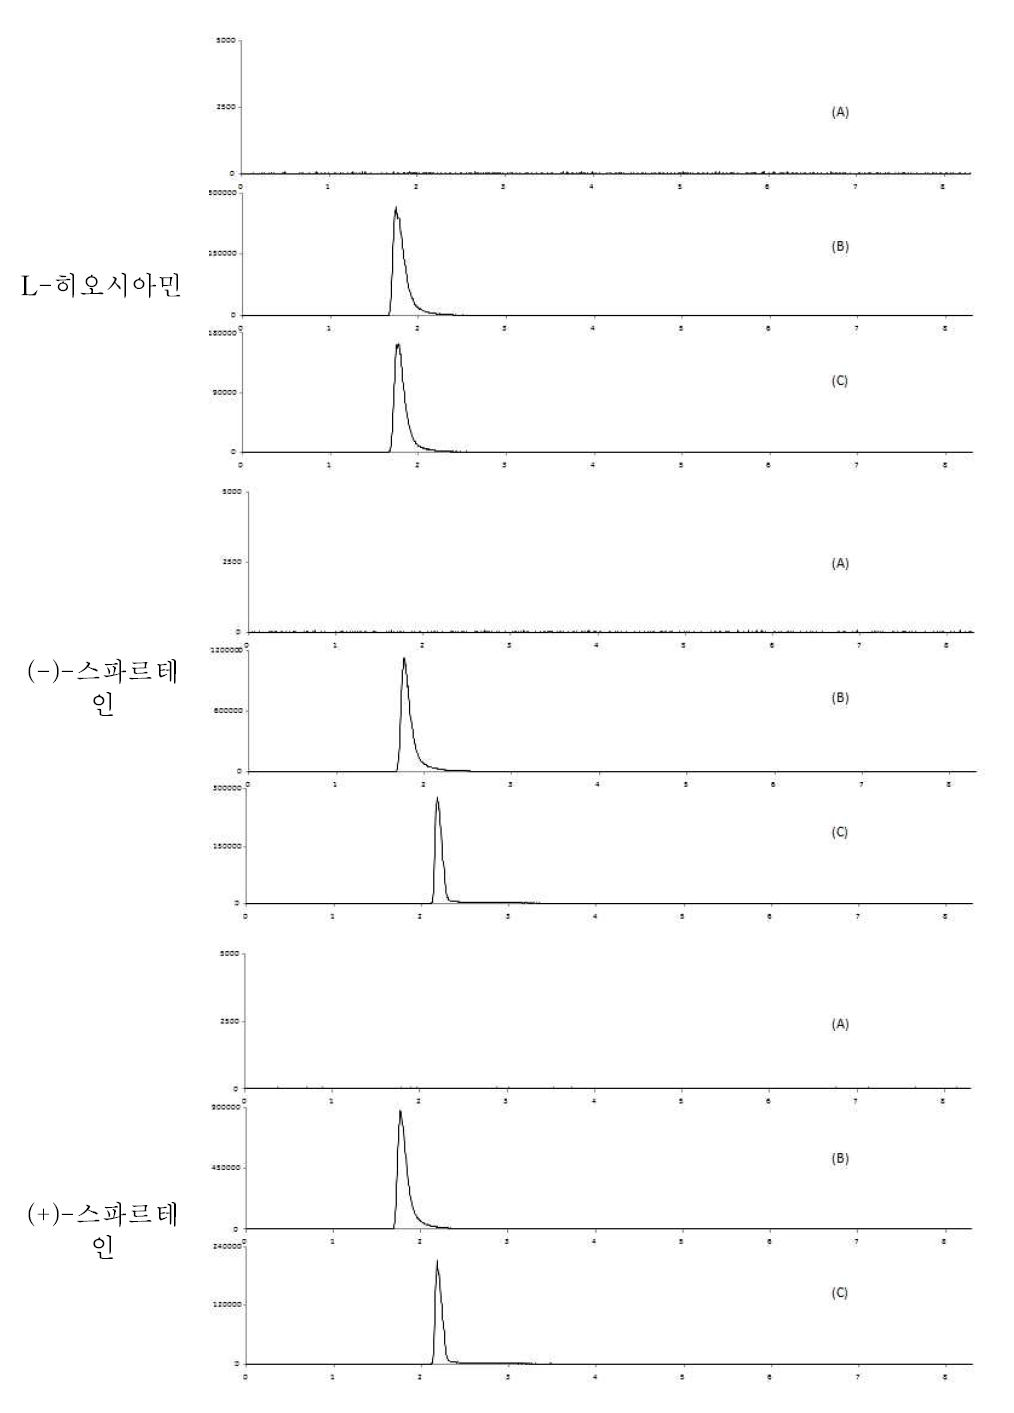 알 중특이성 : blank (A), standard solution (B) spiked sample(C)